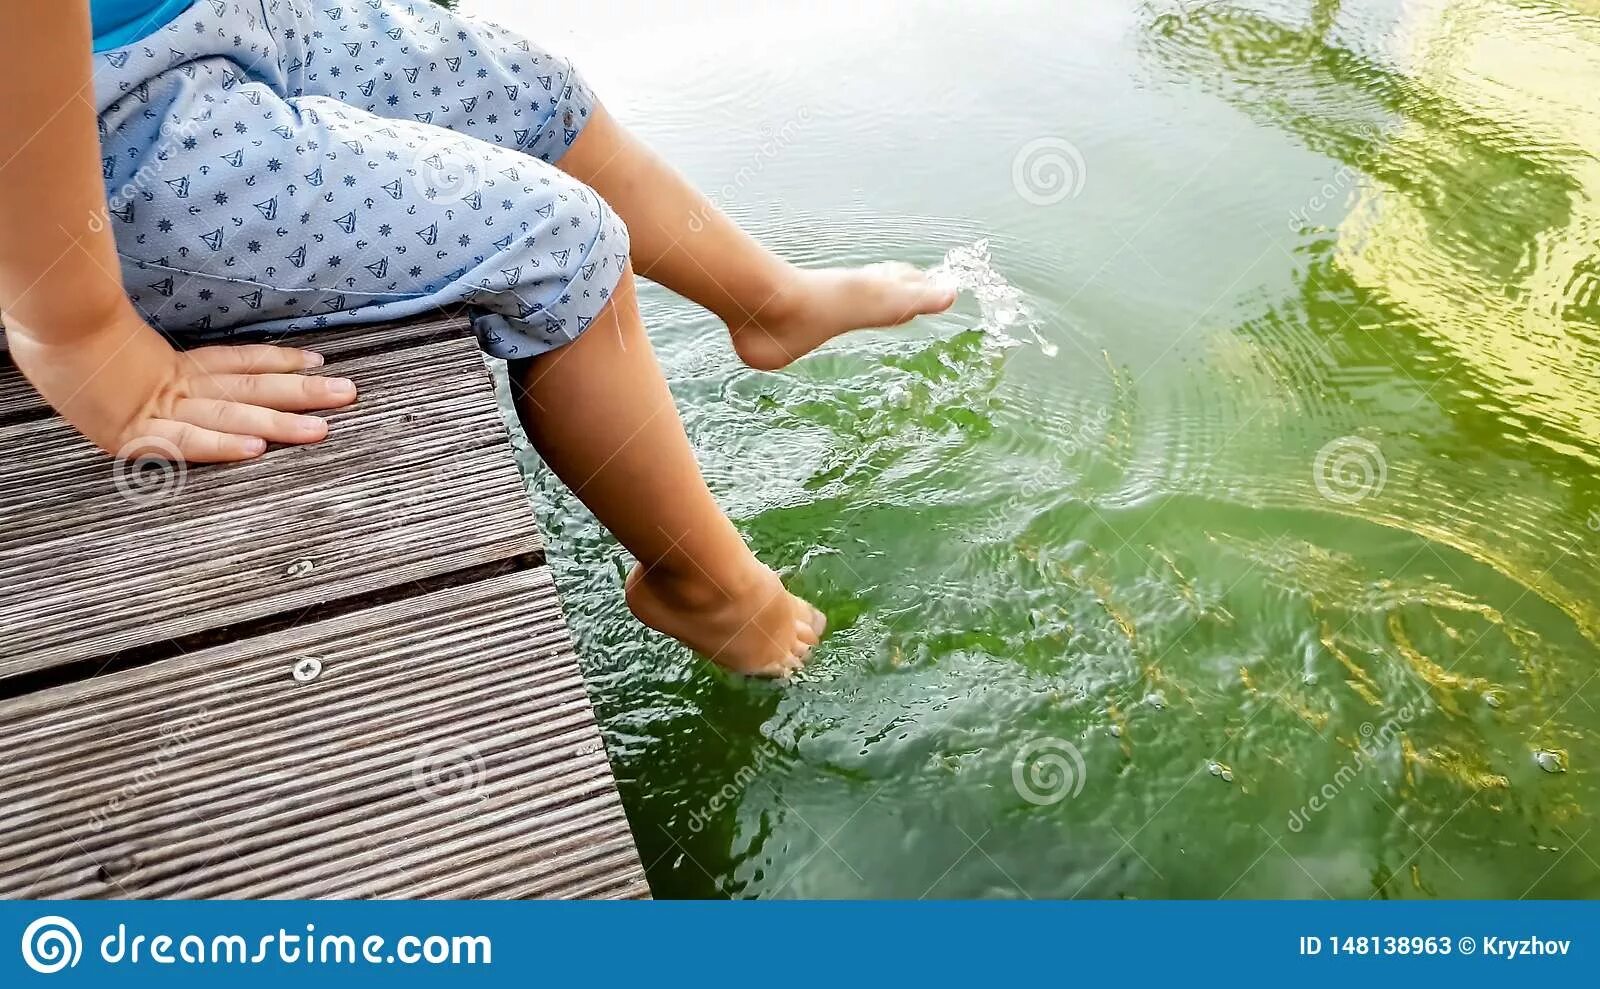 Ноги держать холодной воде. Девочка плескается в воде ногами. Ноги плещут в воде. Ноги в воде дерево. Маленькая девочка плескает ногами в воде.